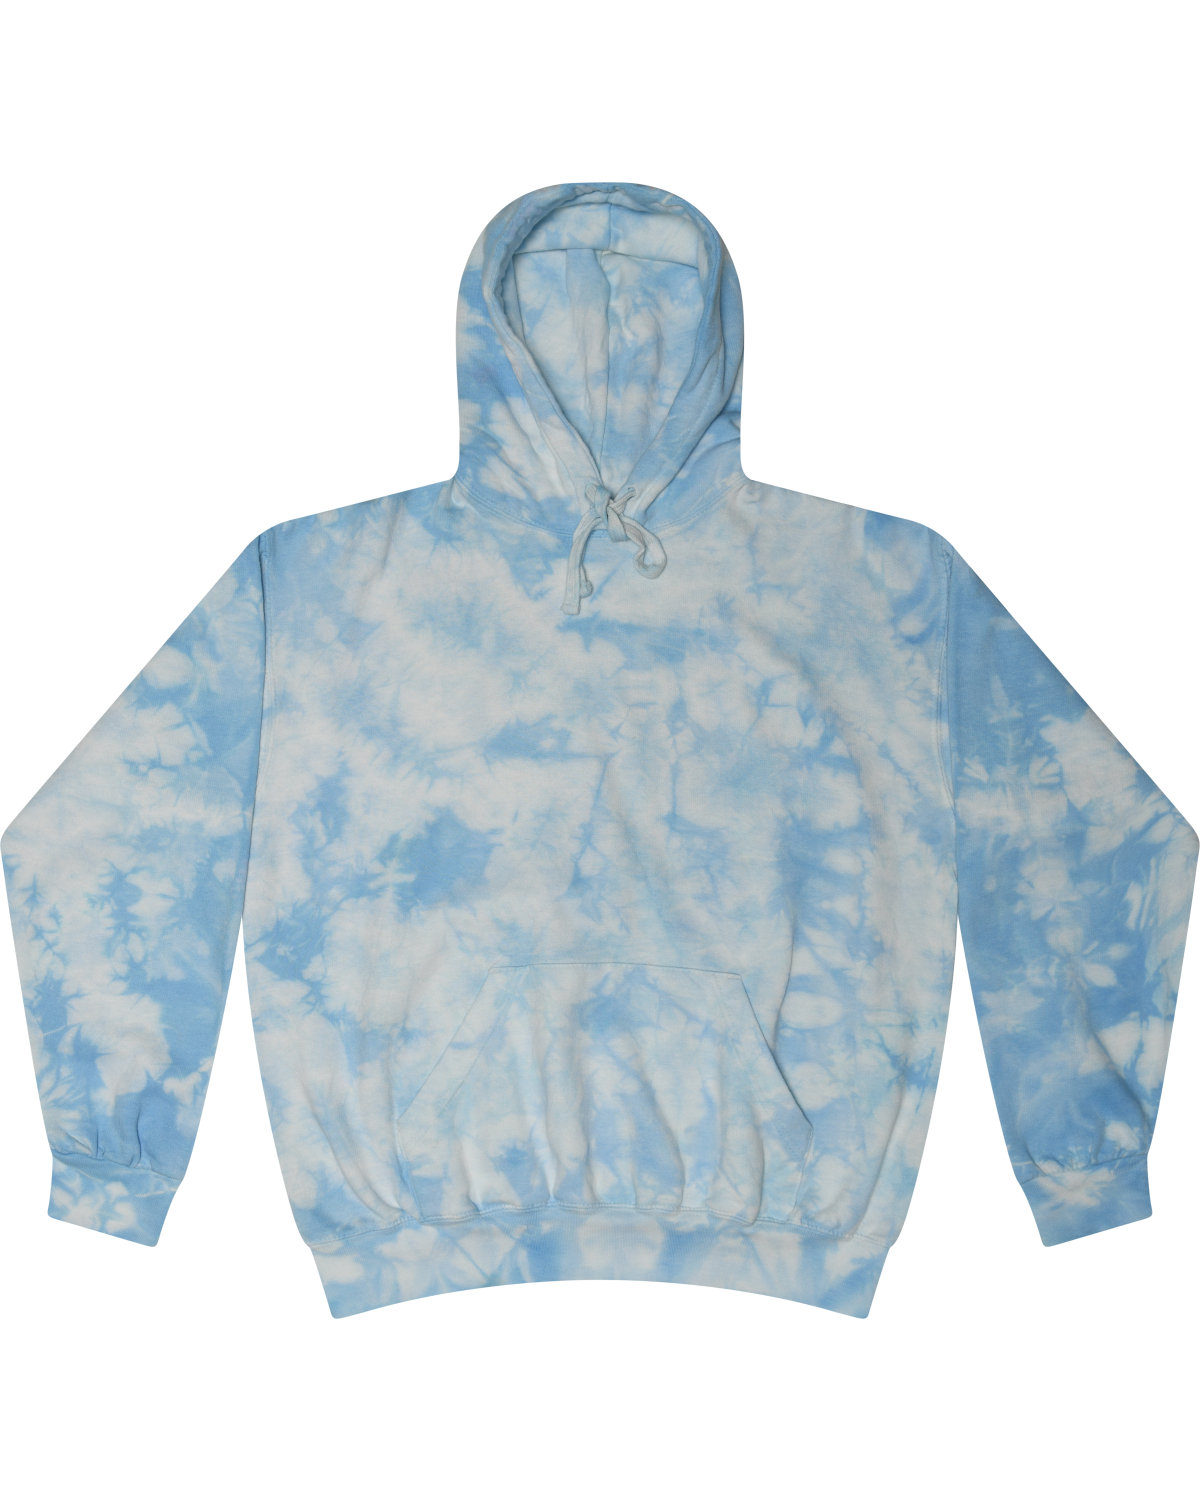 Adult Unisex Crystal Wash Pullover Hooded Sweatshirt-Tie-Dye